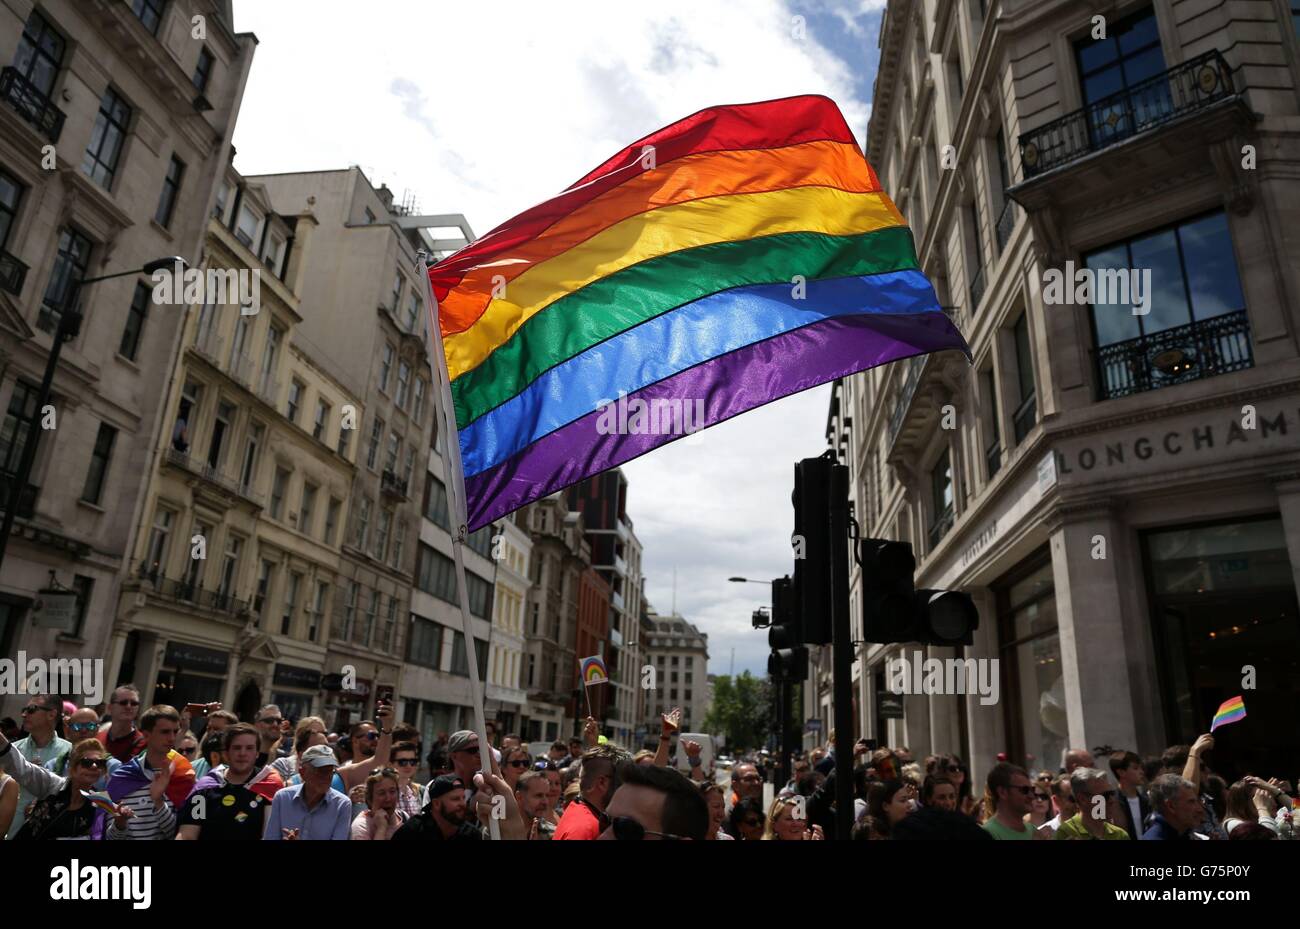 Un drapeau arc-en-ciel est tenue en altitude comme la fierté de Londres parade fait son chemin à travers les rues du centre de Londres. Banque D'Images